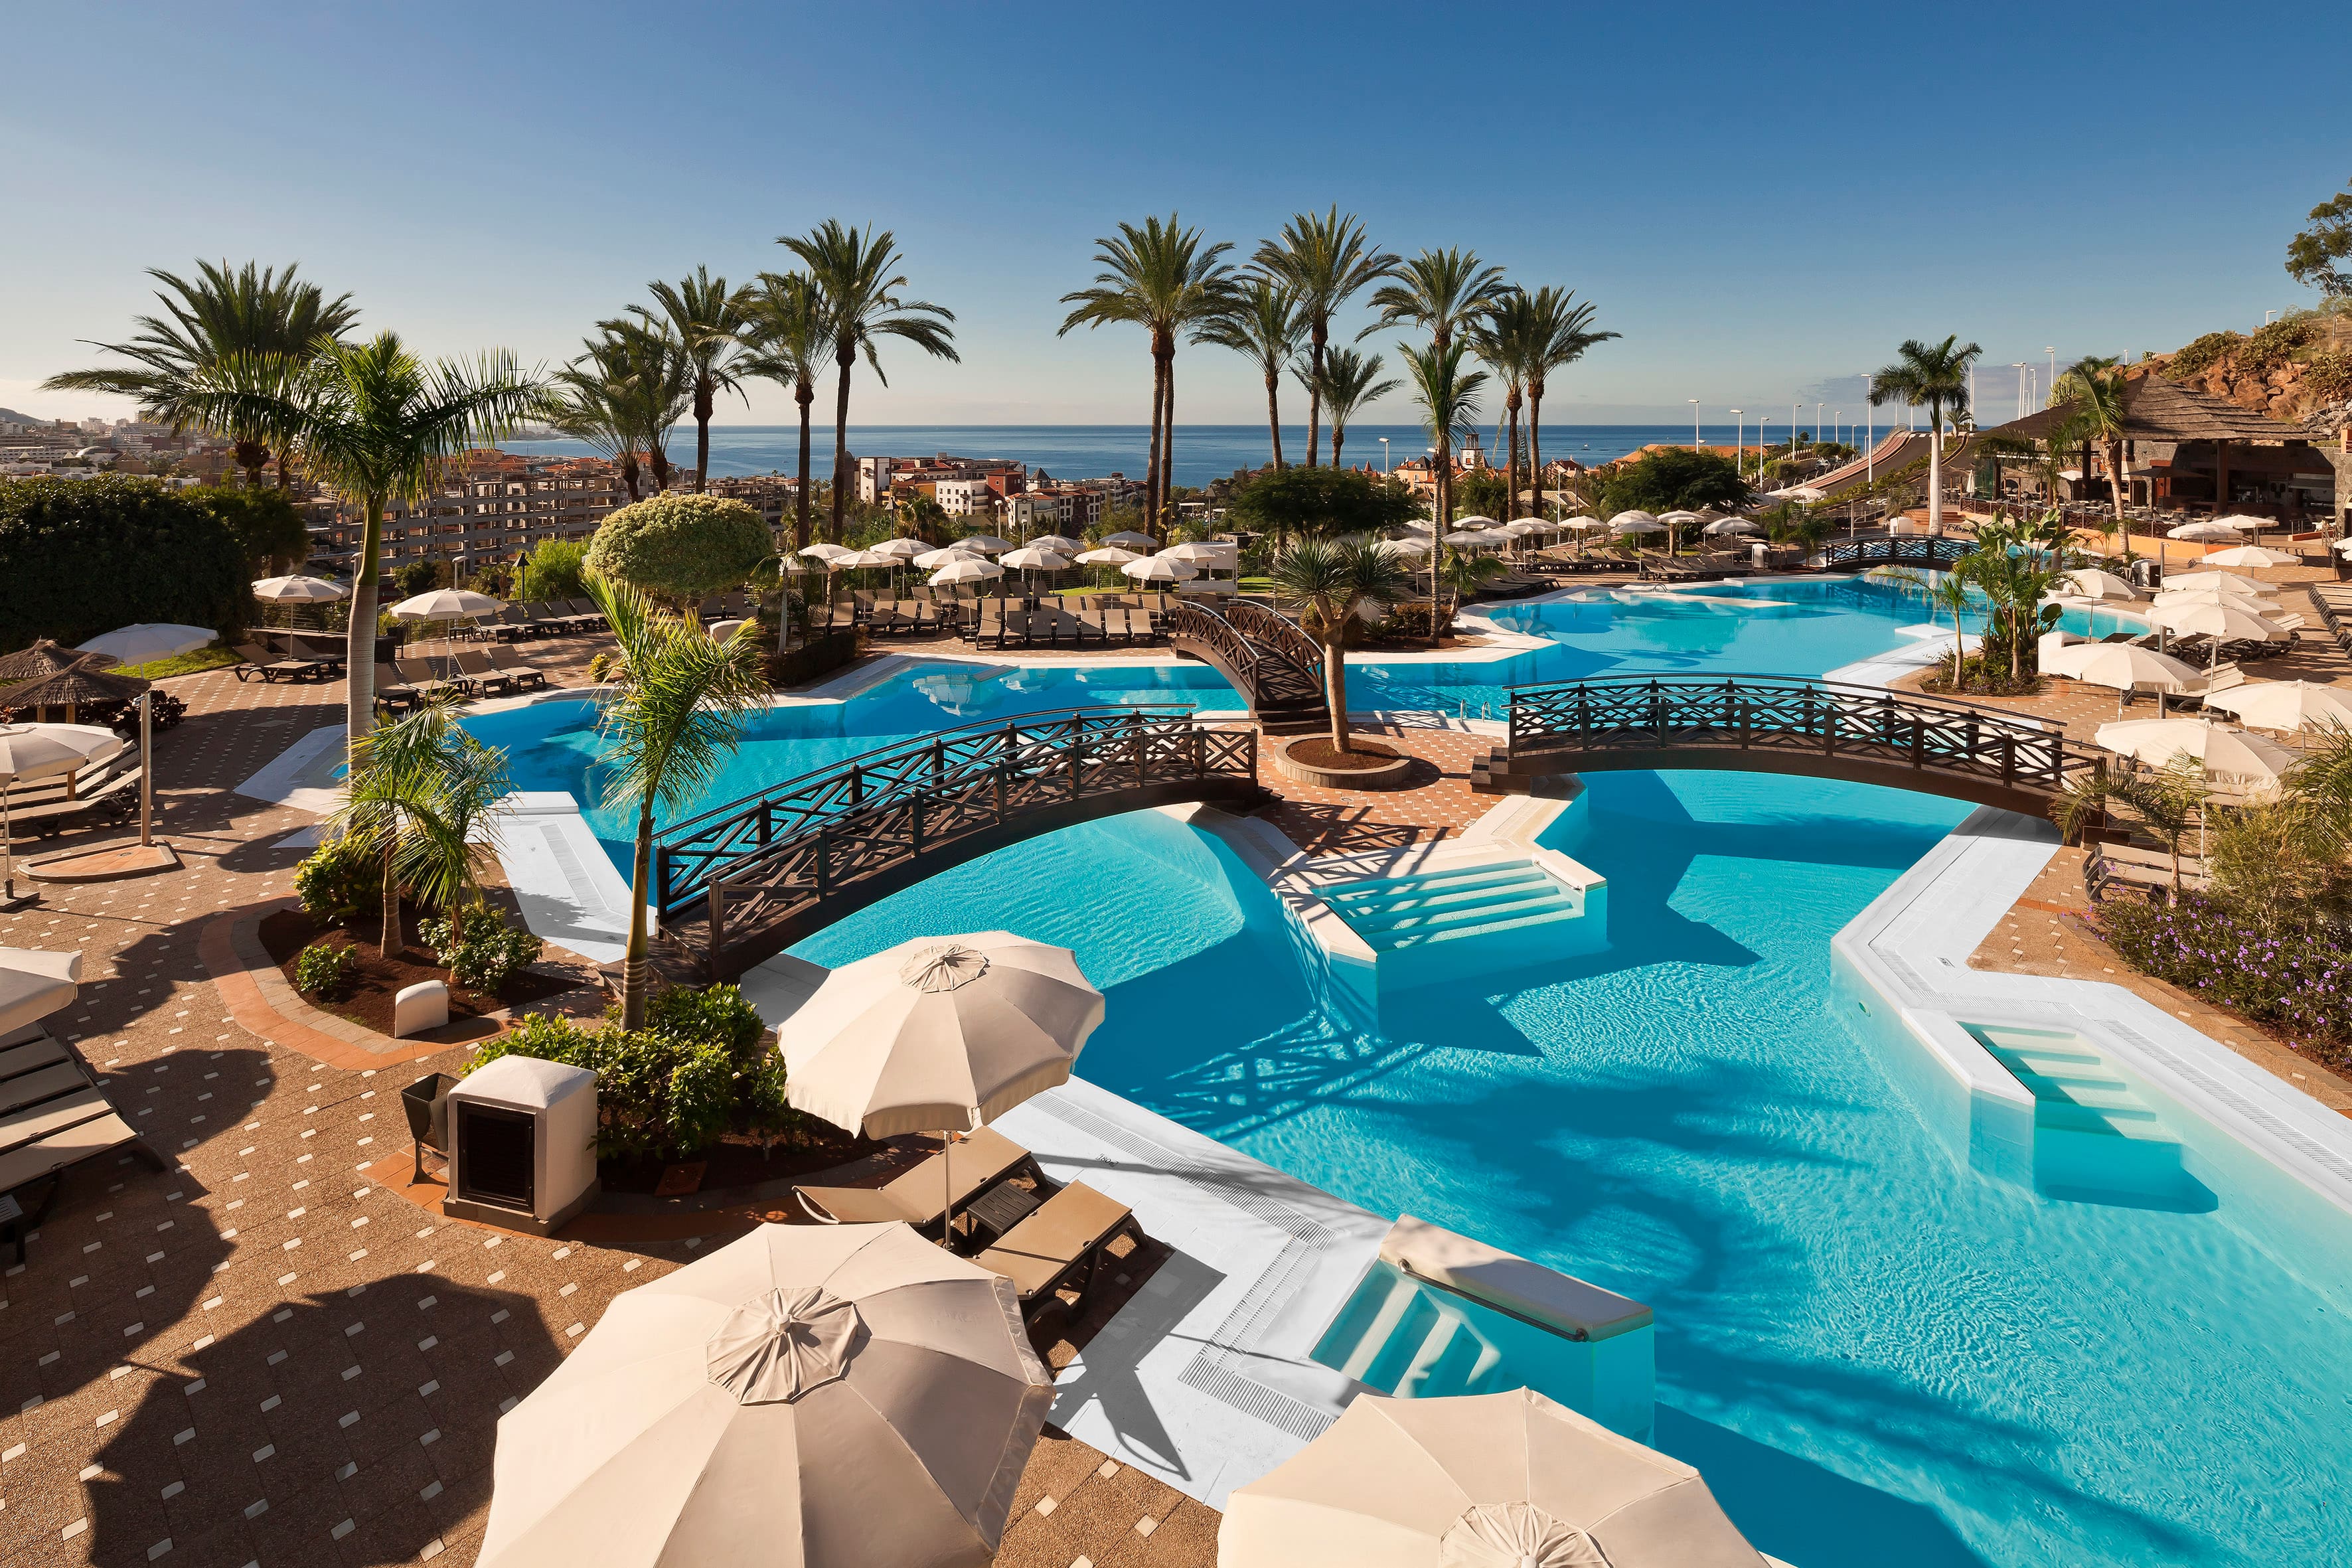 El Duque hotel review: family fun in Tenerife's Costa Adeje